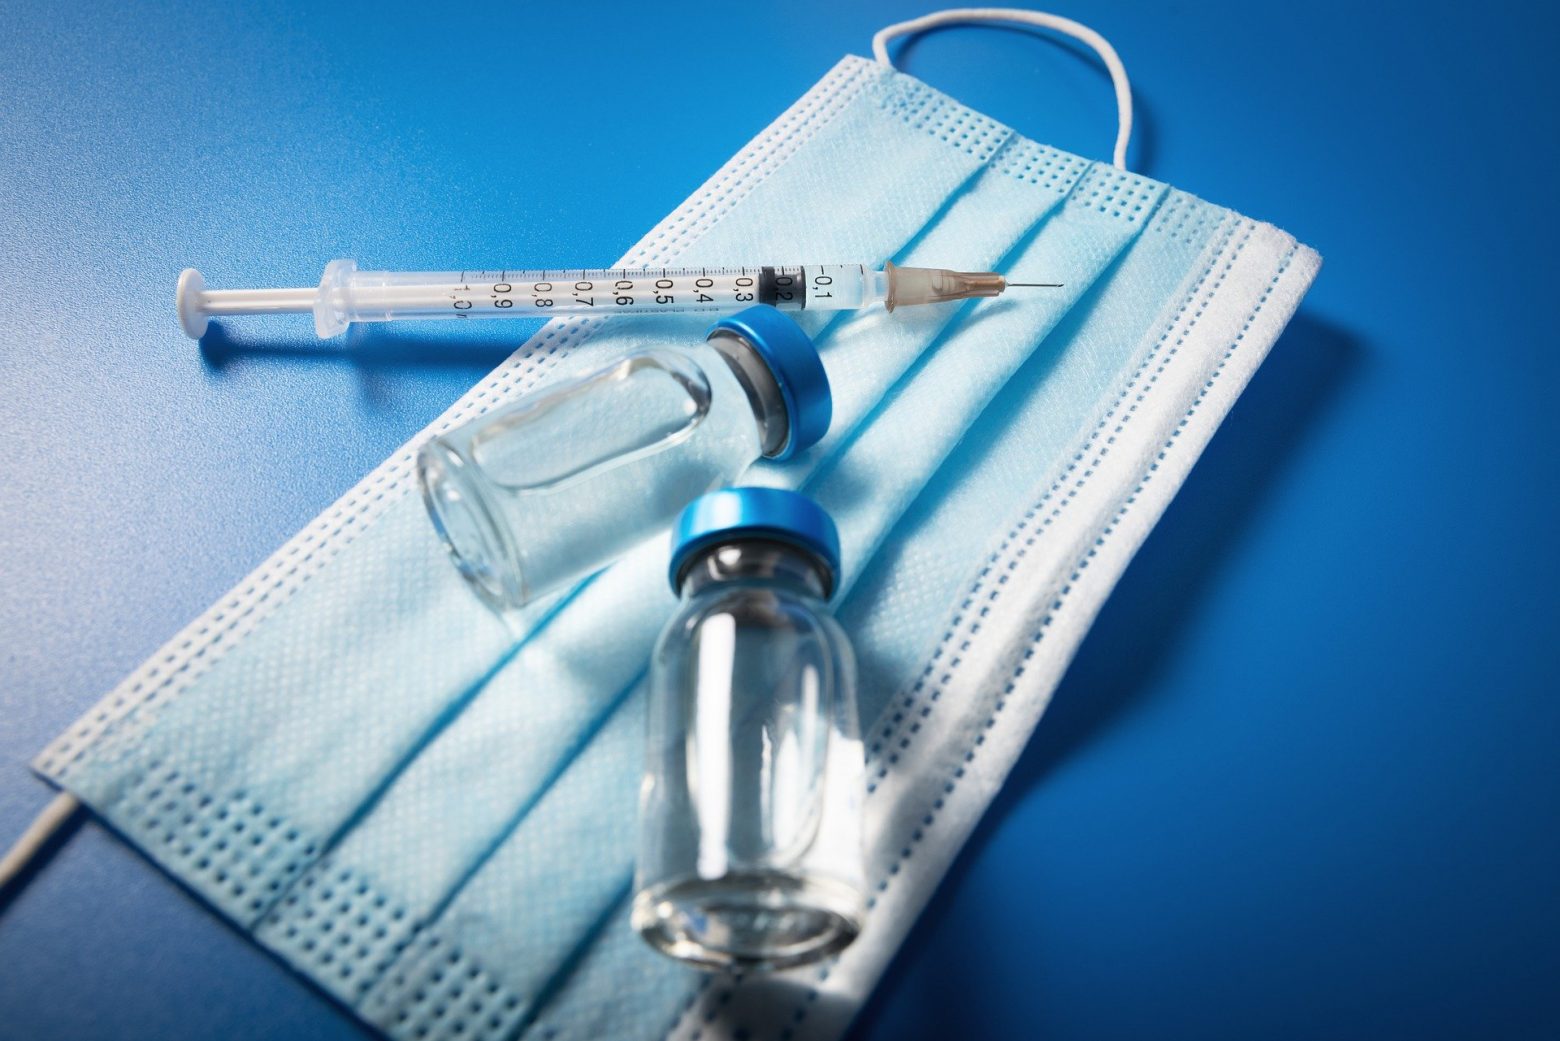 Εμβολιασμός για γρίπη, ταυτόχρονα με τον κορωνοϊό – Πότε ανοίγει η πλατφόρμα – Ποιοι προηγούνται